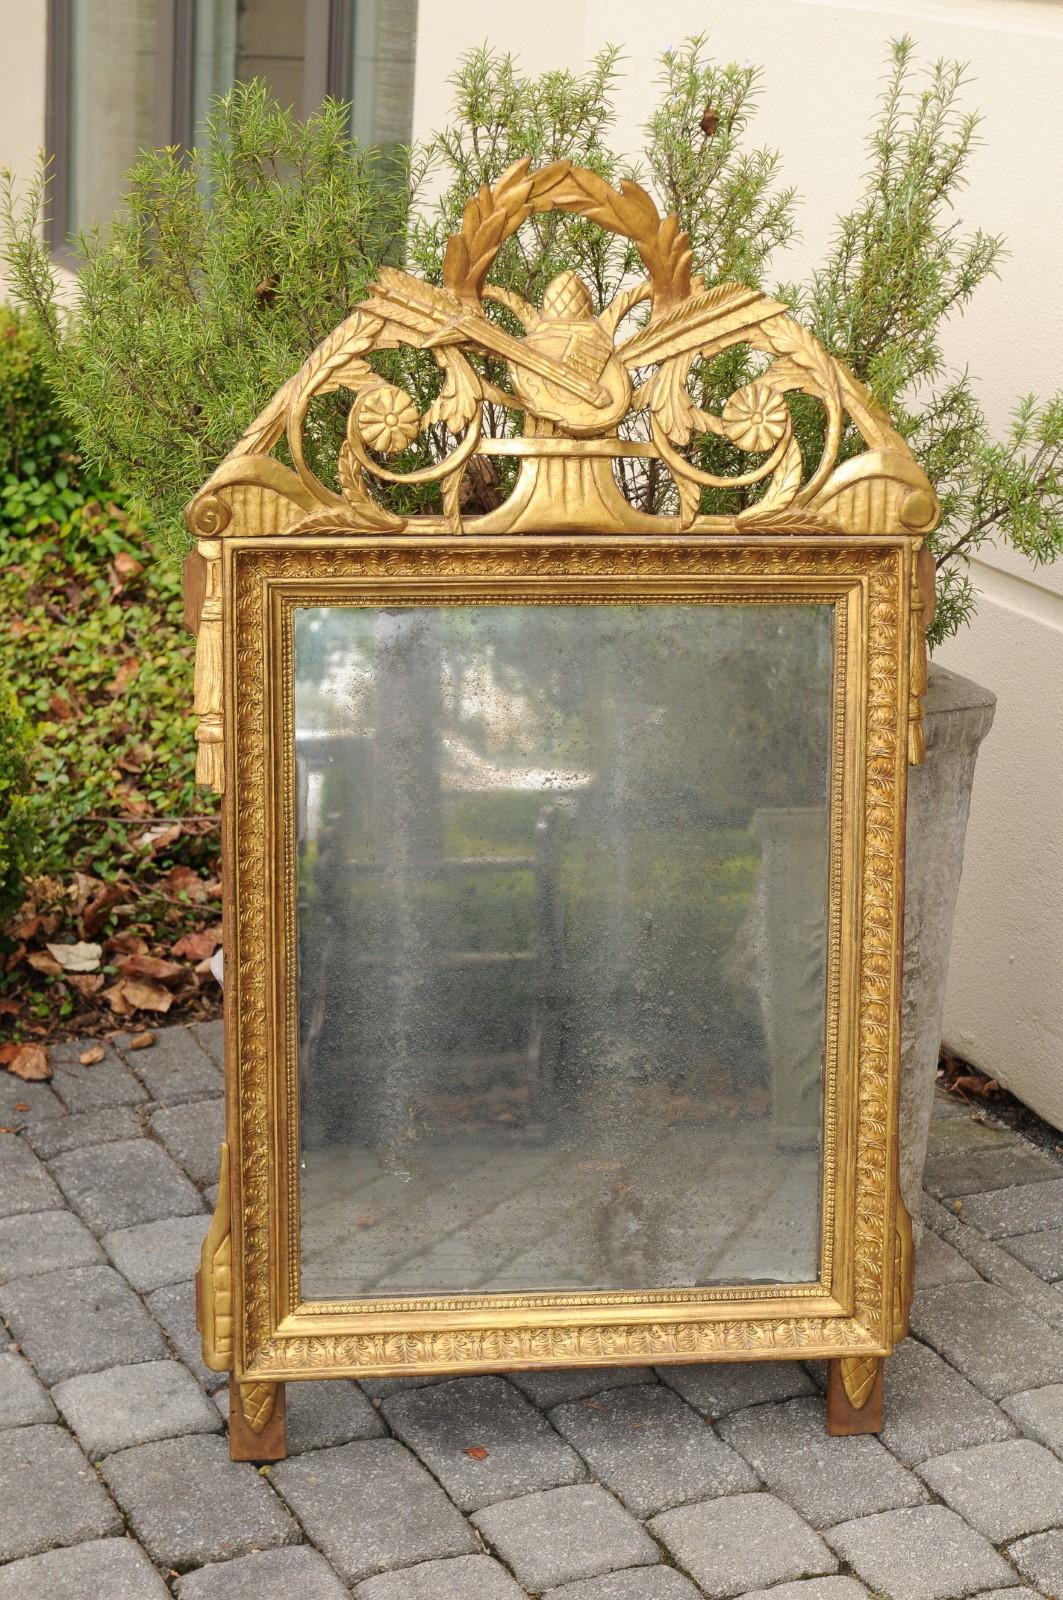 Ce miroir en bois doré sculpté de style Louis XVI de la fin du XVIIIe siècle présente un exquis cimier ajouré et sculpté composé de divers motifs tels qu'un luth, un gland, des flèches, des fleurs, une couronne de laurier et des volutes symbolisant